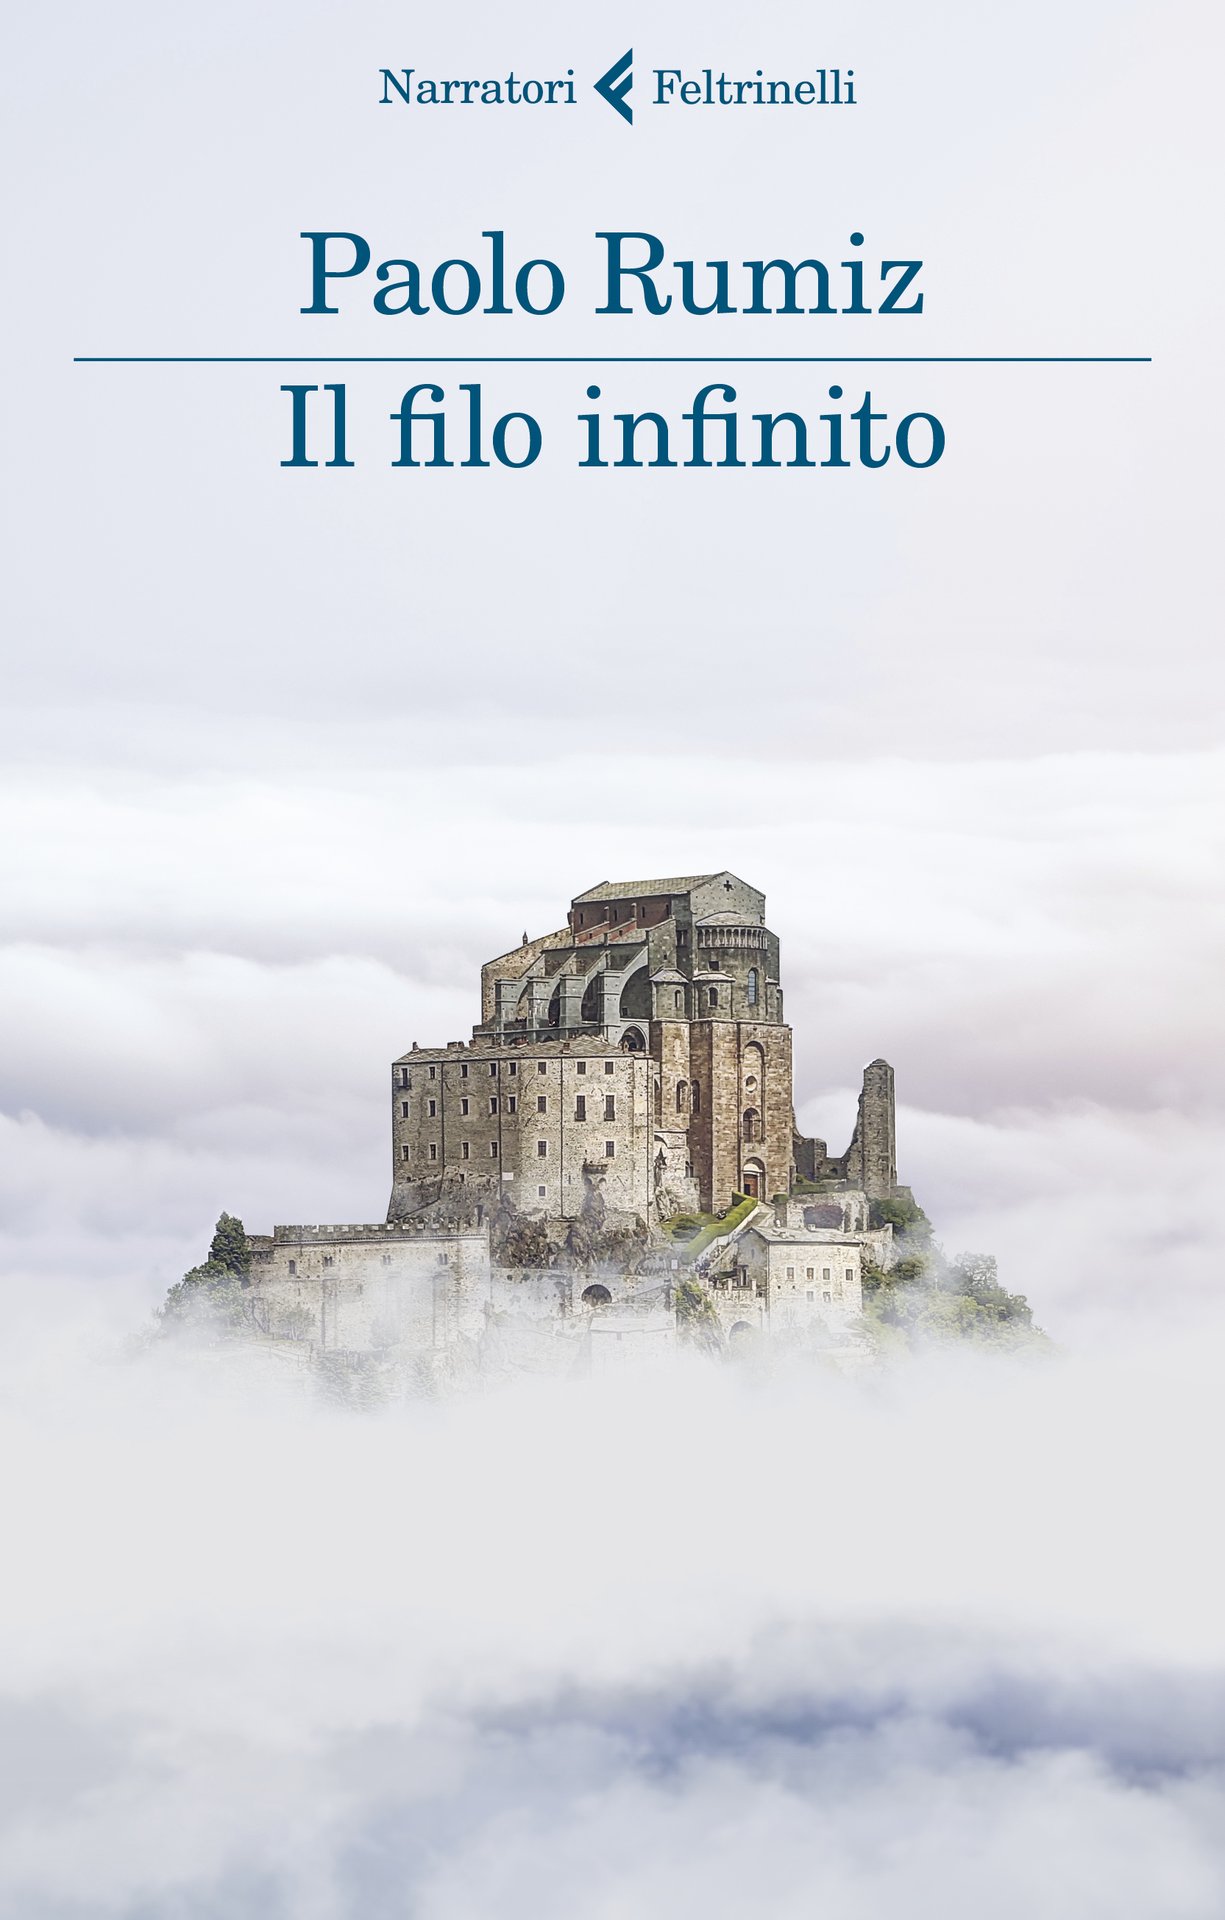 Salone Internazionale del Libro di Torino 2019